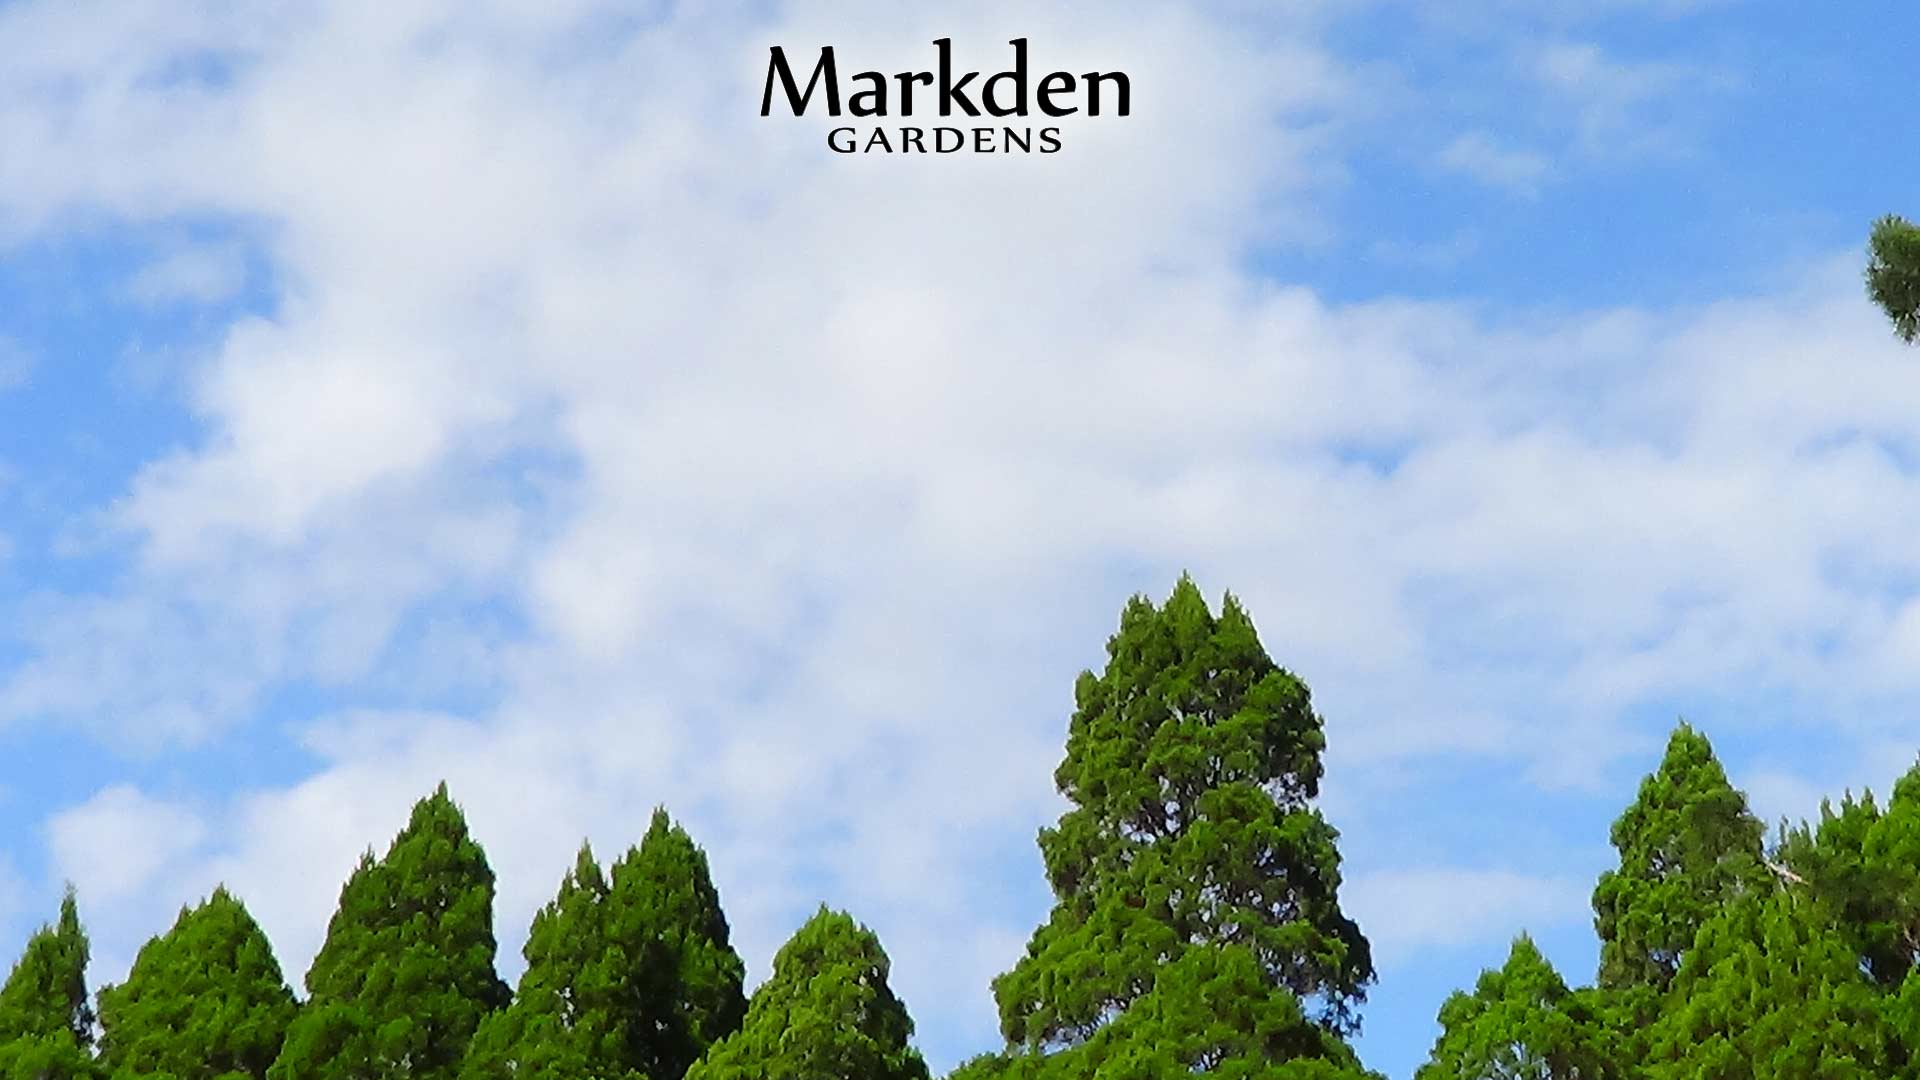 Markden Gardens